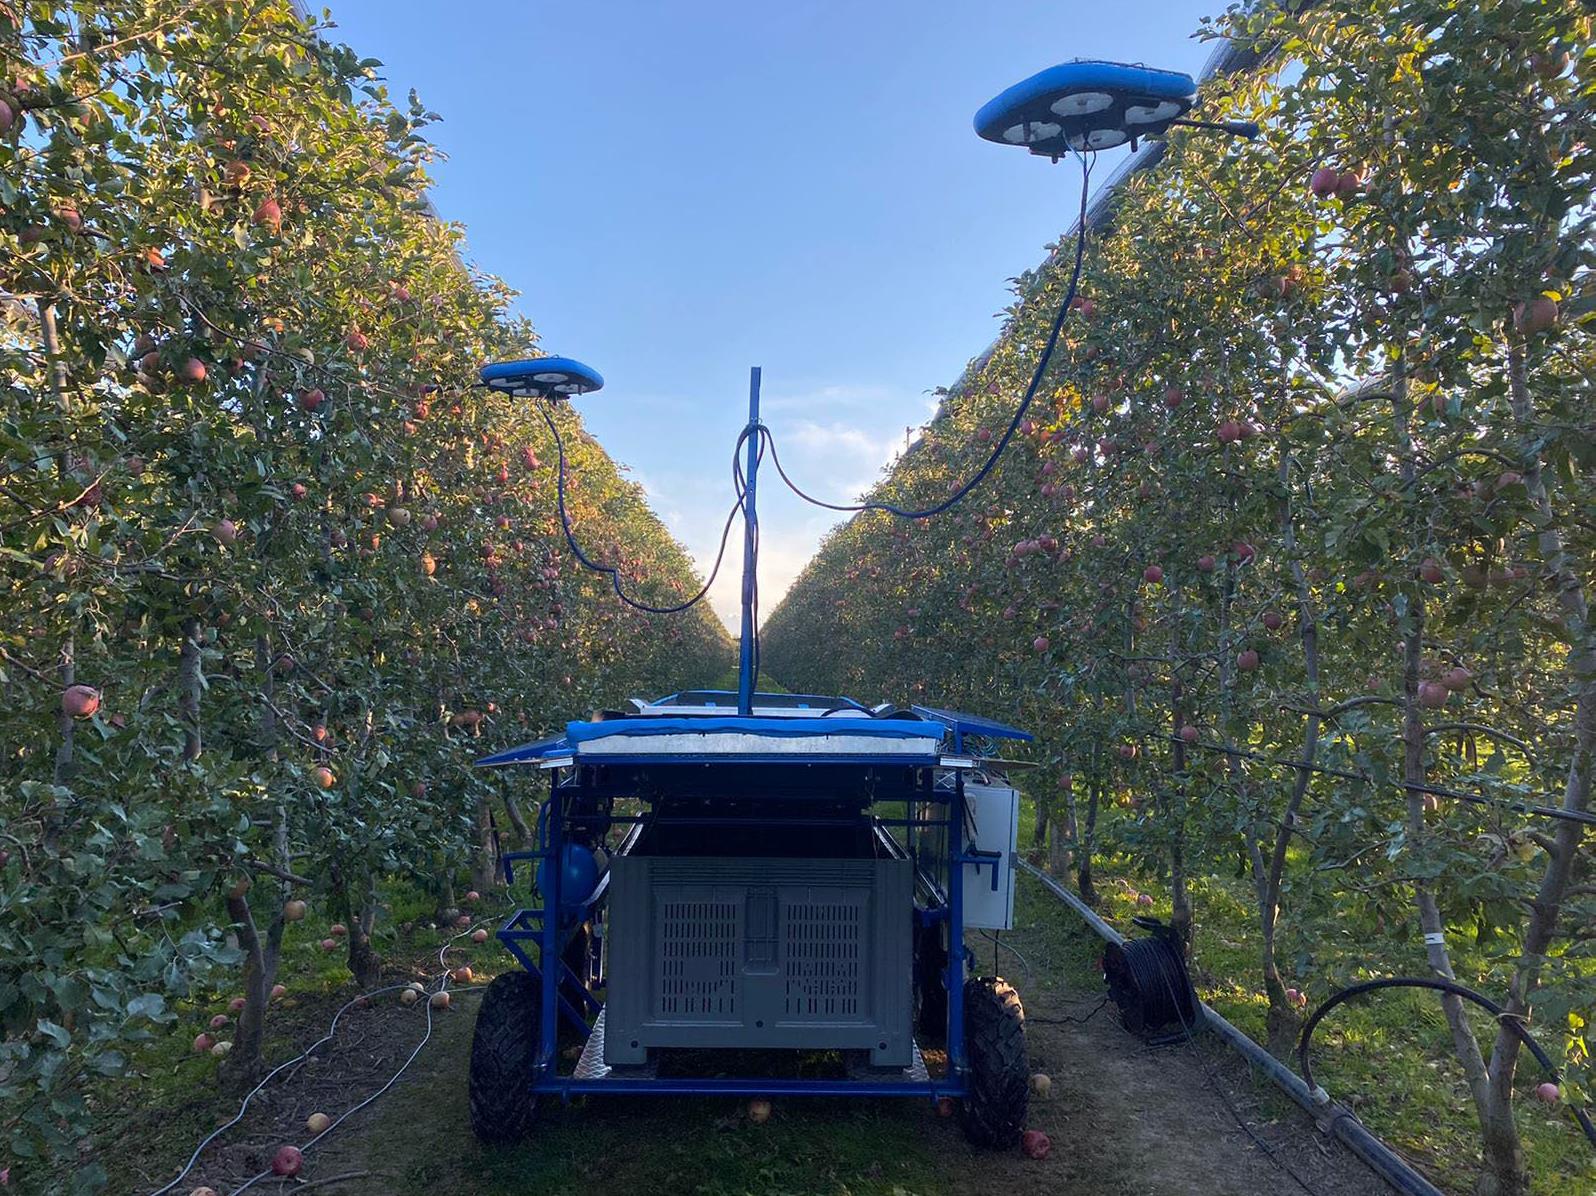 Kubota y Tevel ganan el DLG Agrifuture Concept Award 2022 por su Sistema Automatizado de Recogida de fruta de desarrollo conjunto.